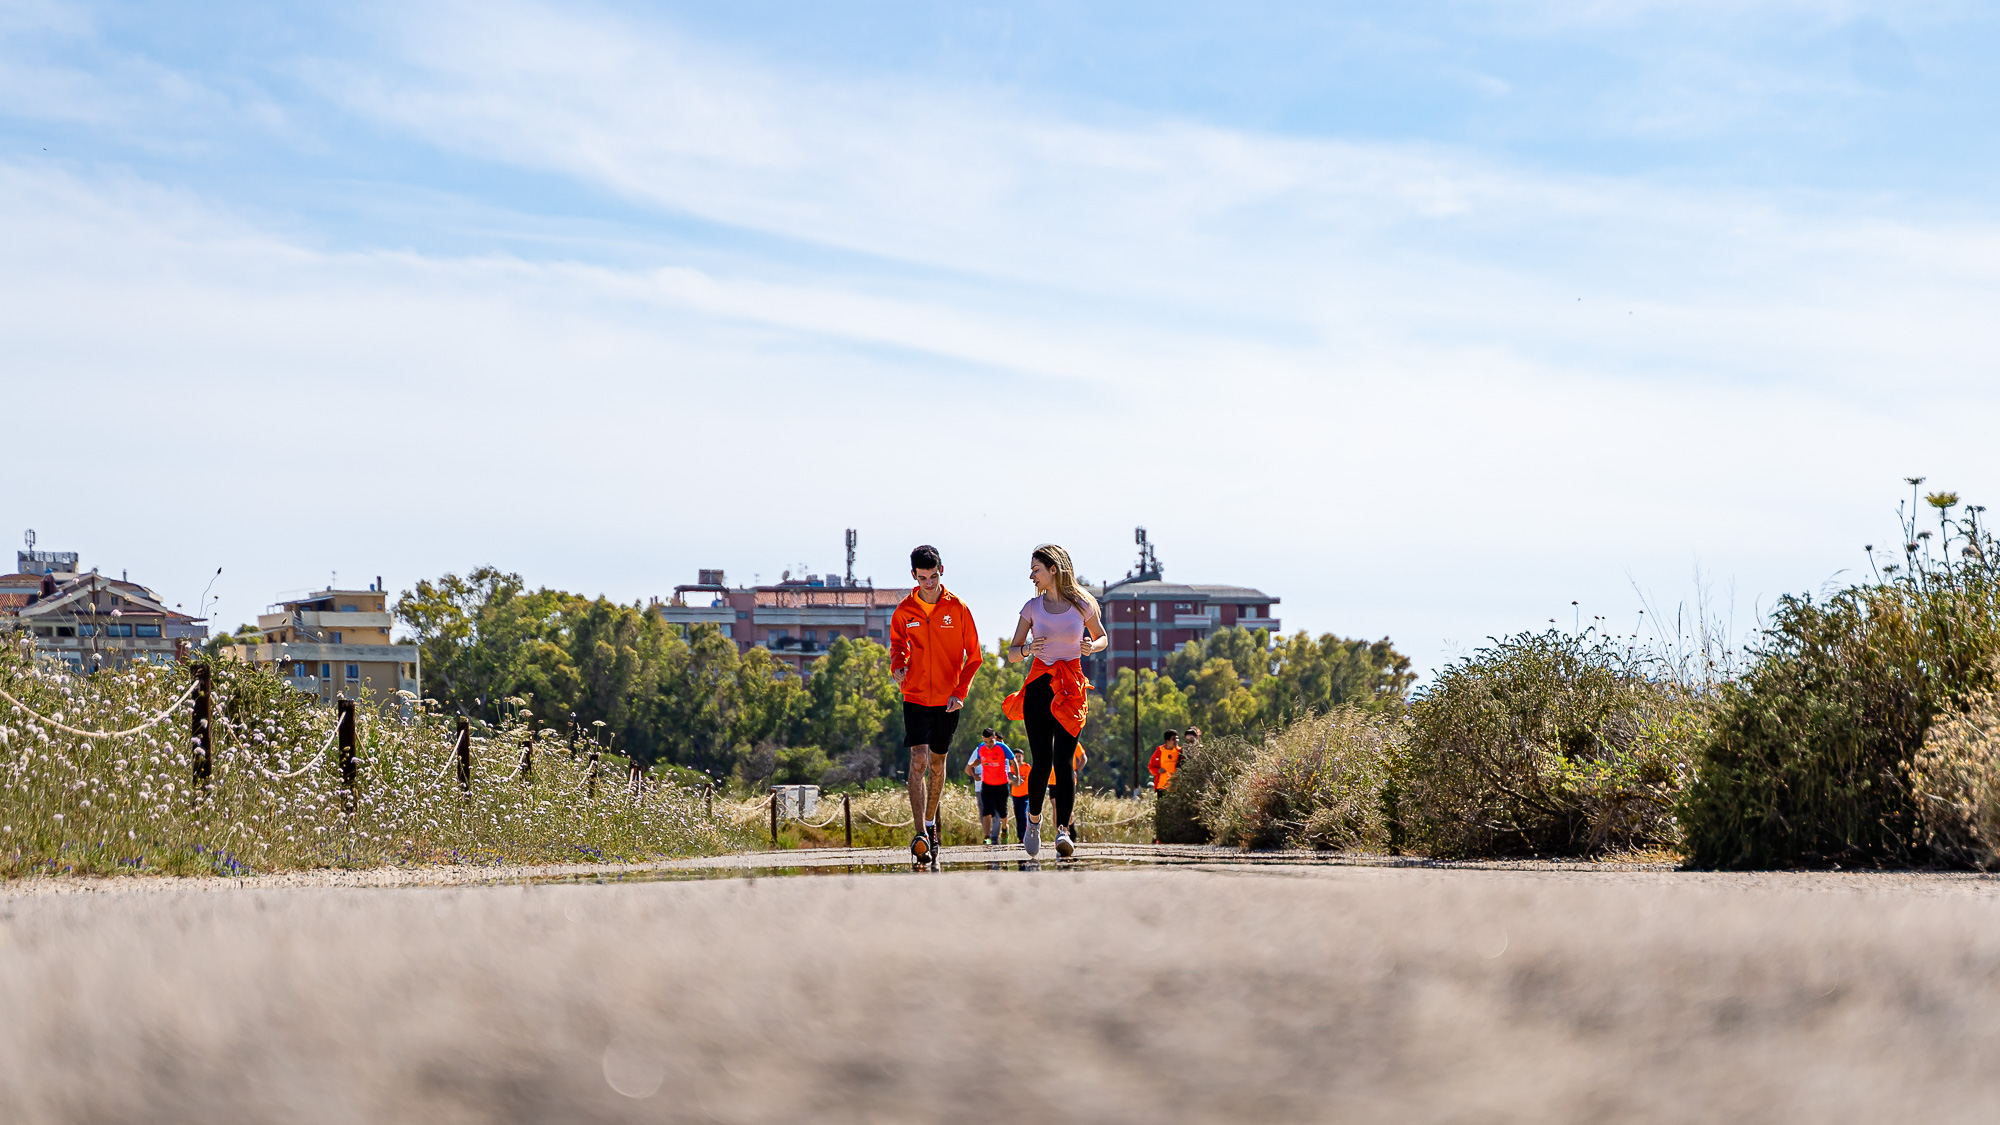 Immagine del Progetto sportivo Filippide - Diversamente Onlus: i nostri ragazzi che corrono durante una manifestazione sportiva organizzata da noi